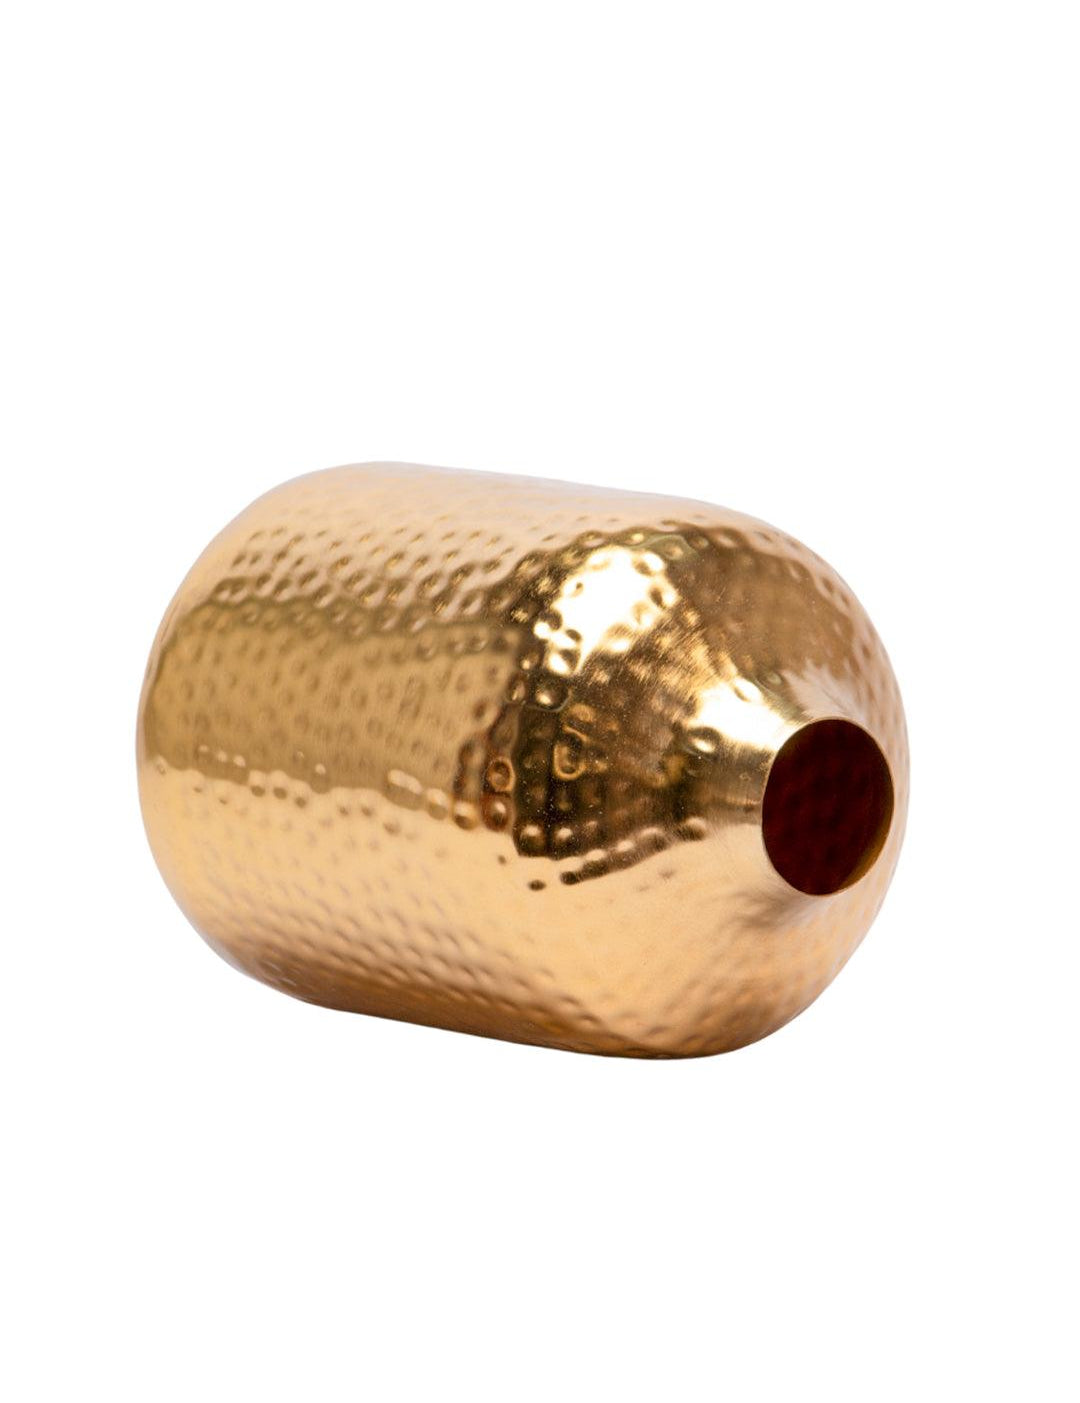 Decorative Hammered Vase -Golden & Cylinder Shape - MARKET 99